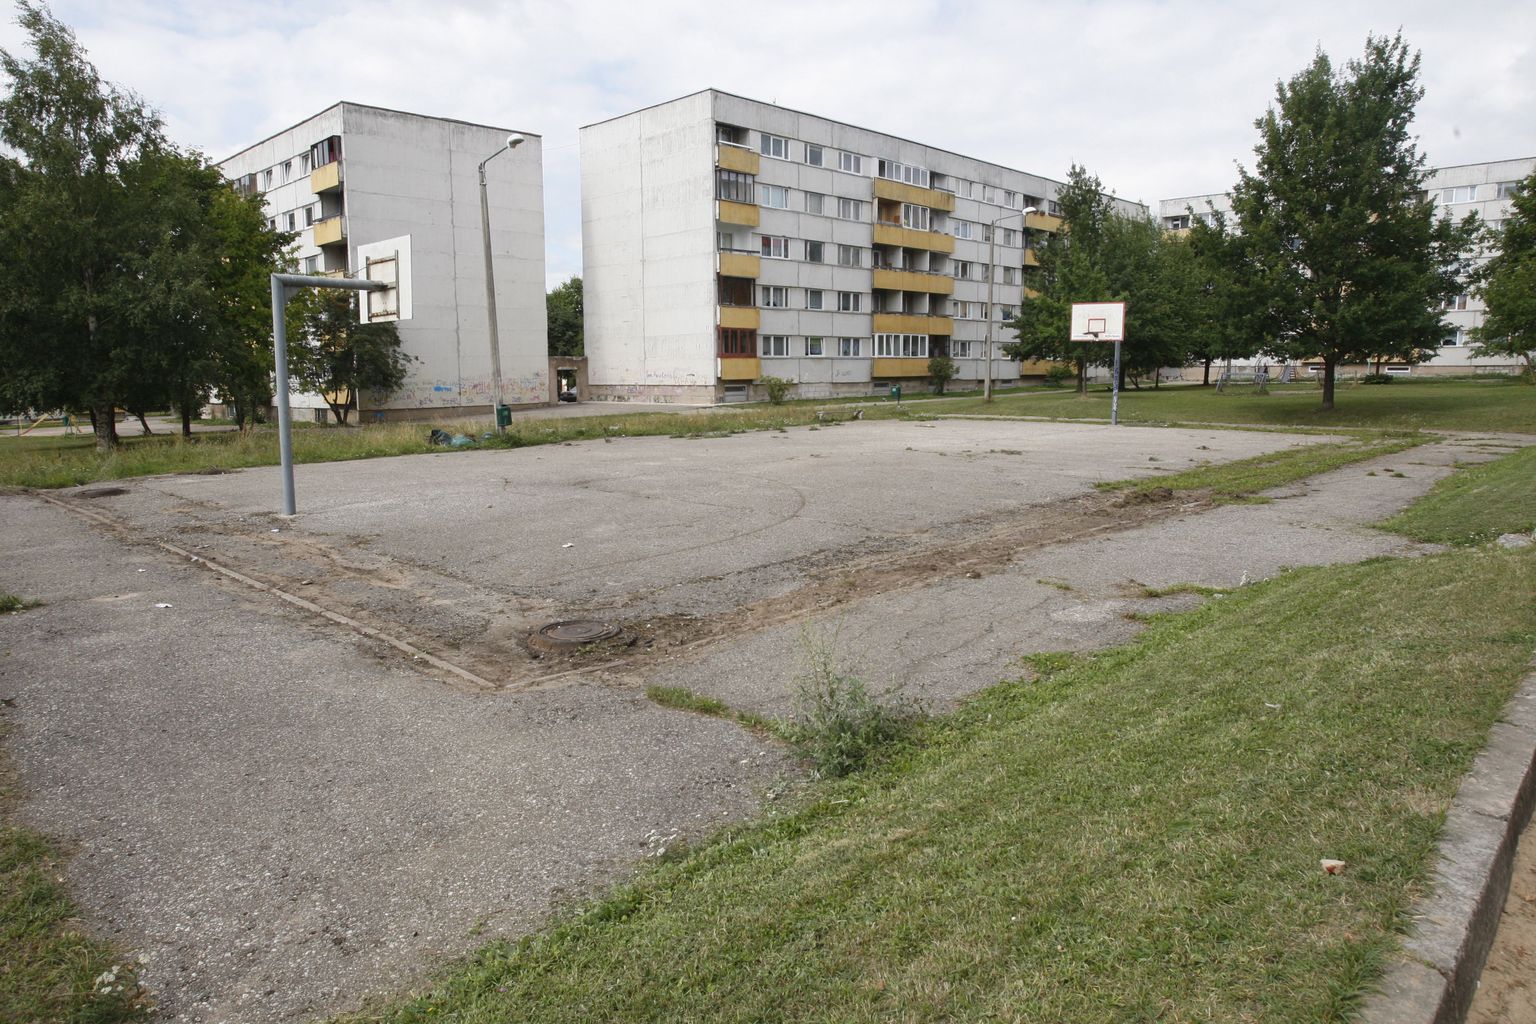 Tavapärane vaatepilt ükskõik millises Eesti otsas – lagunev ja mahajäetud spordiplats magalarajoonis